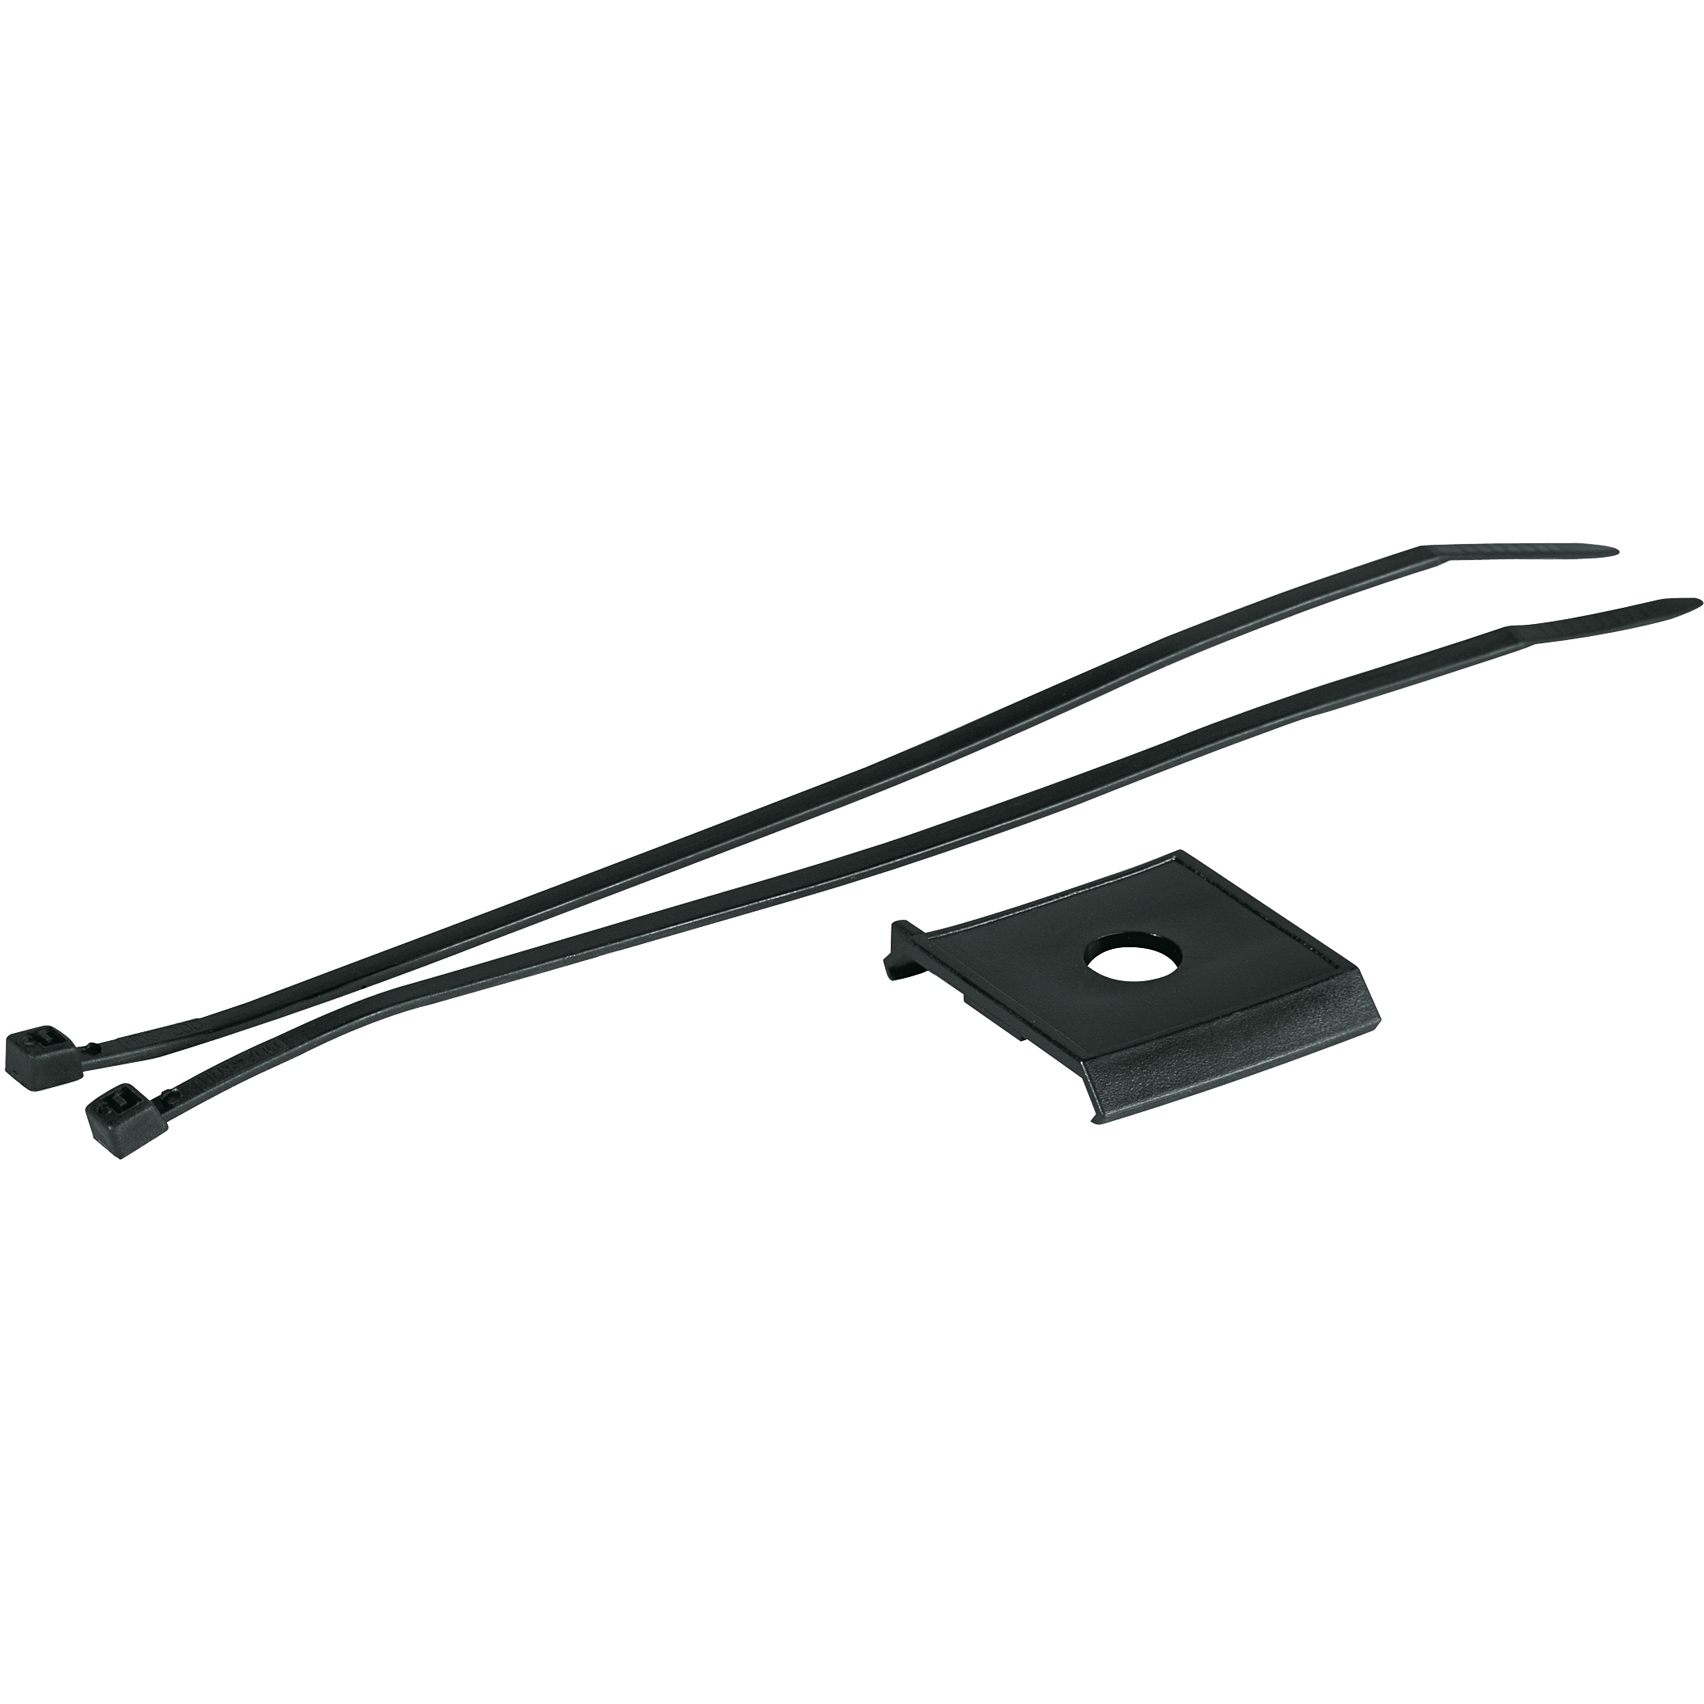 Produktbild von SKS Shockboard Adapter für Cannondale Headshock und Starrgabeln